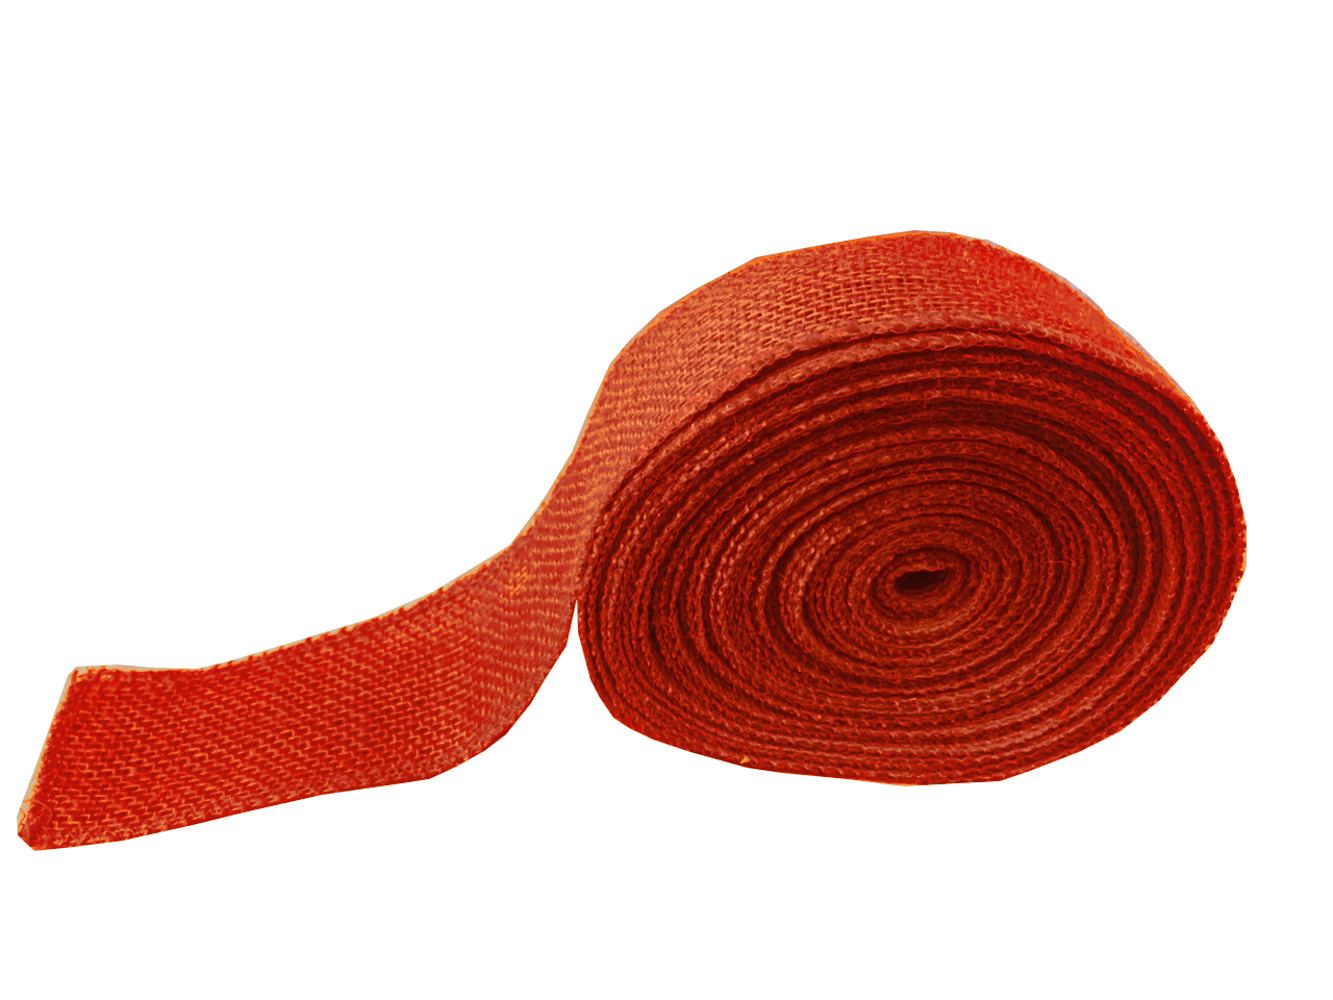 2" Tangerine Burlap Ribbon - 10 Yards (Serged) Made in USA